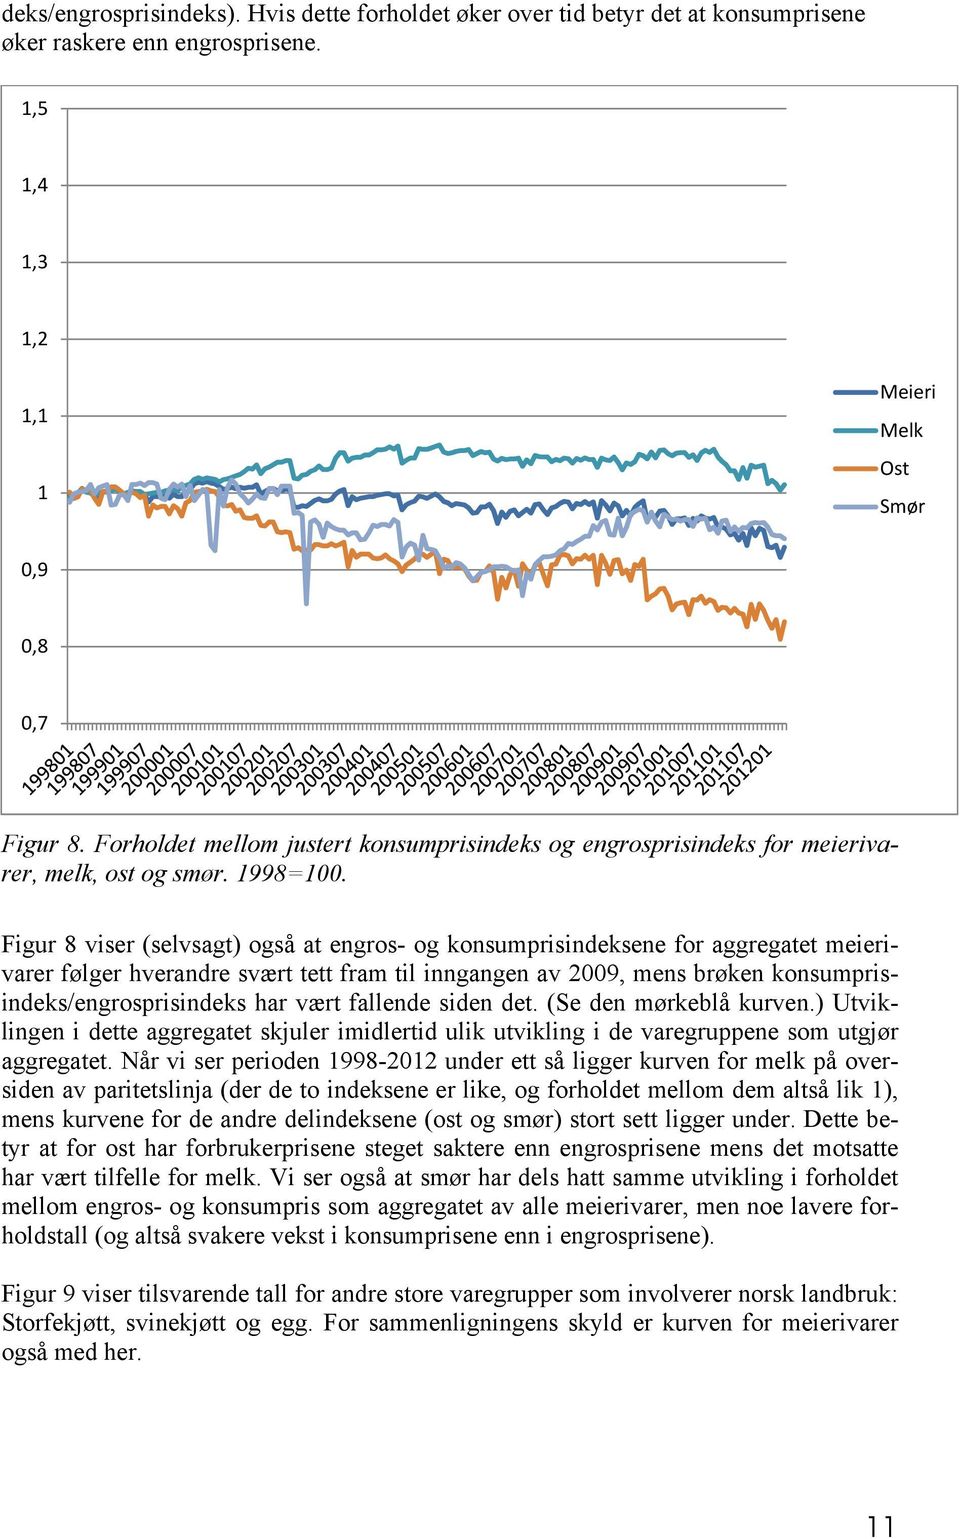 Figur 8 viser (selvsagt) også at engros- og konsumprisindeksene for aggregatet meierivarer følger hverandre svært tett fram til inngangen av 2009, mens brøken konsumprisindeks/engrosprisindeks har